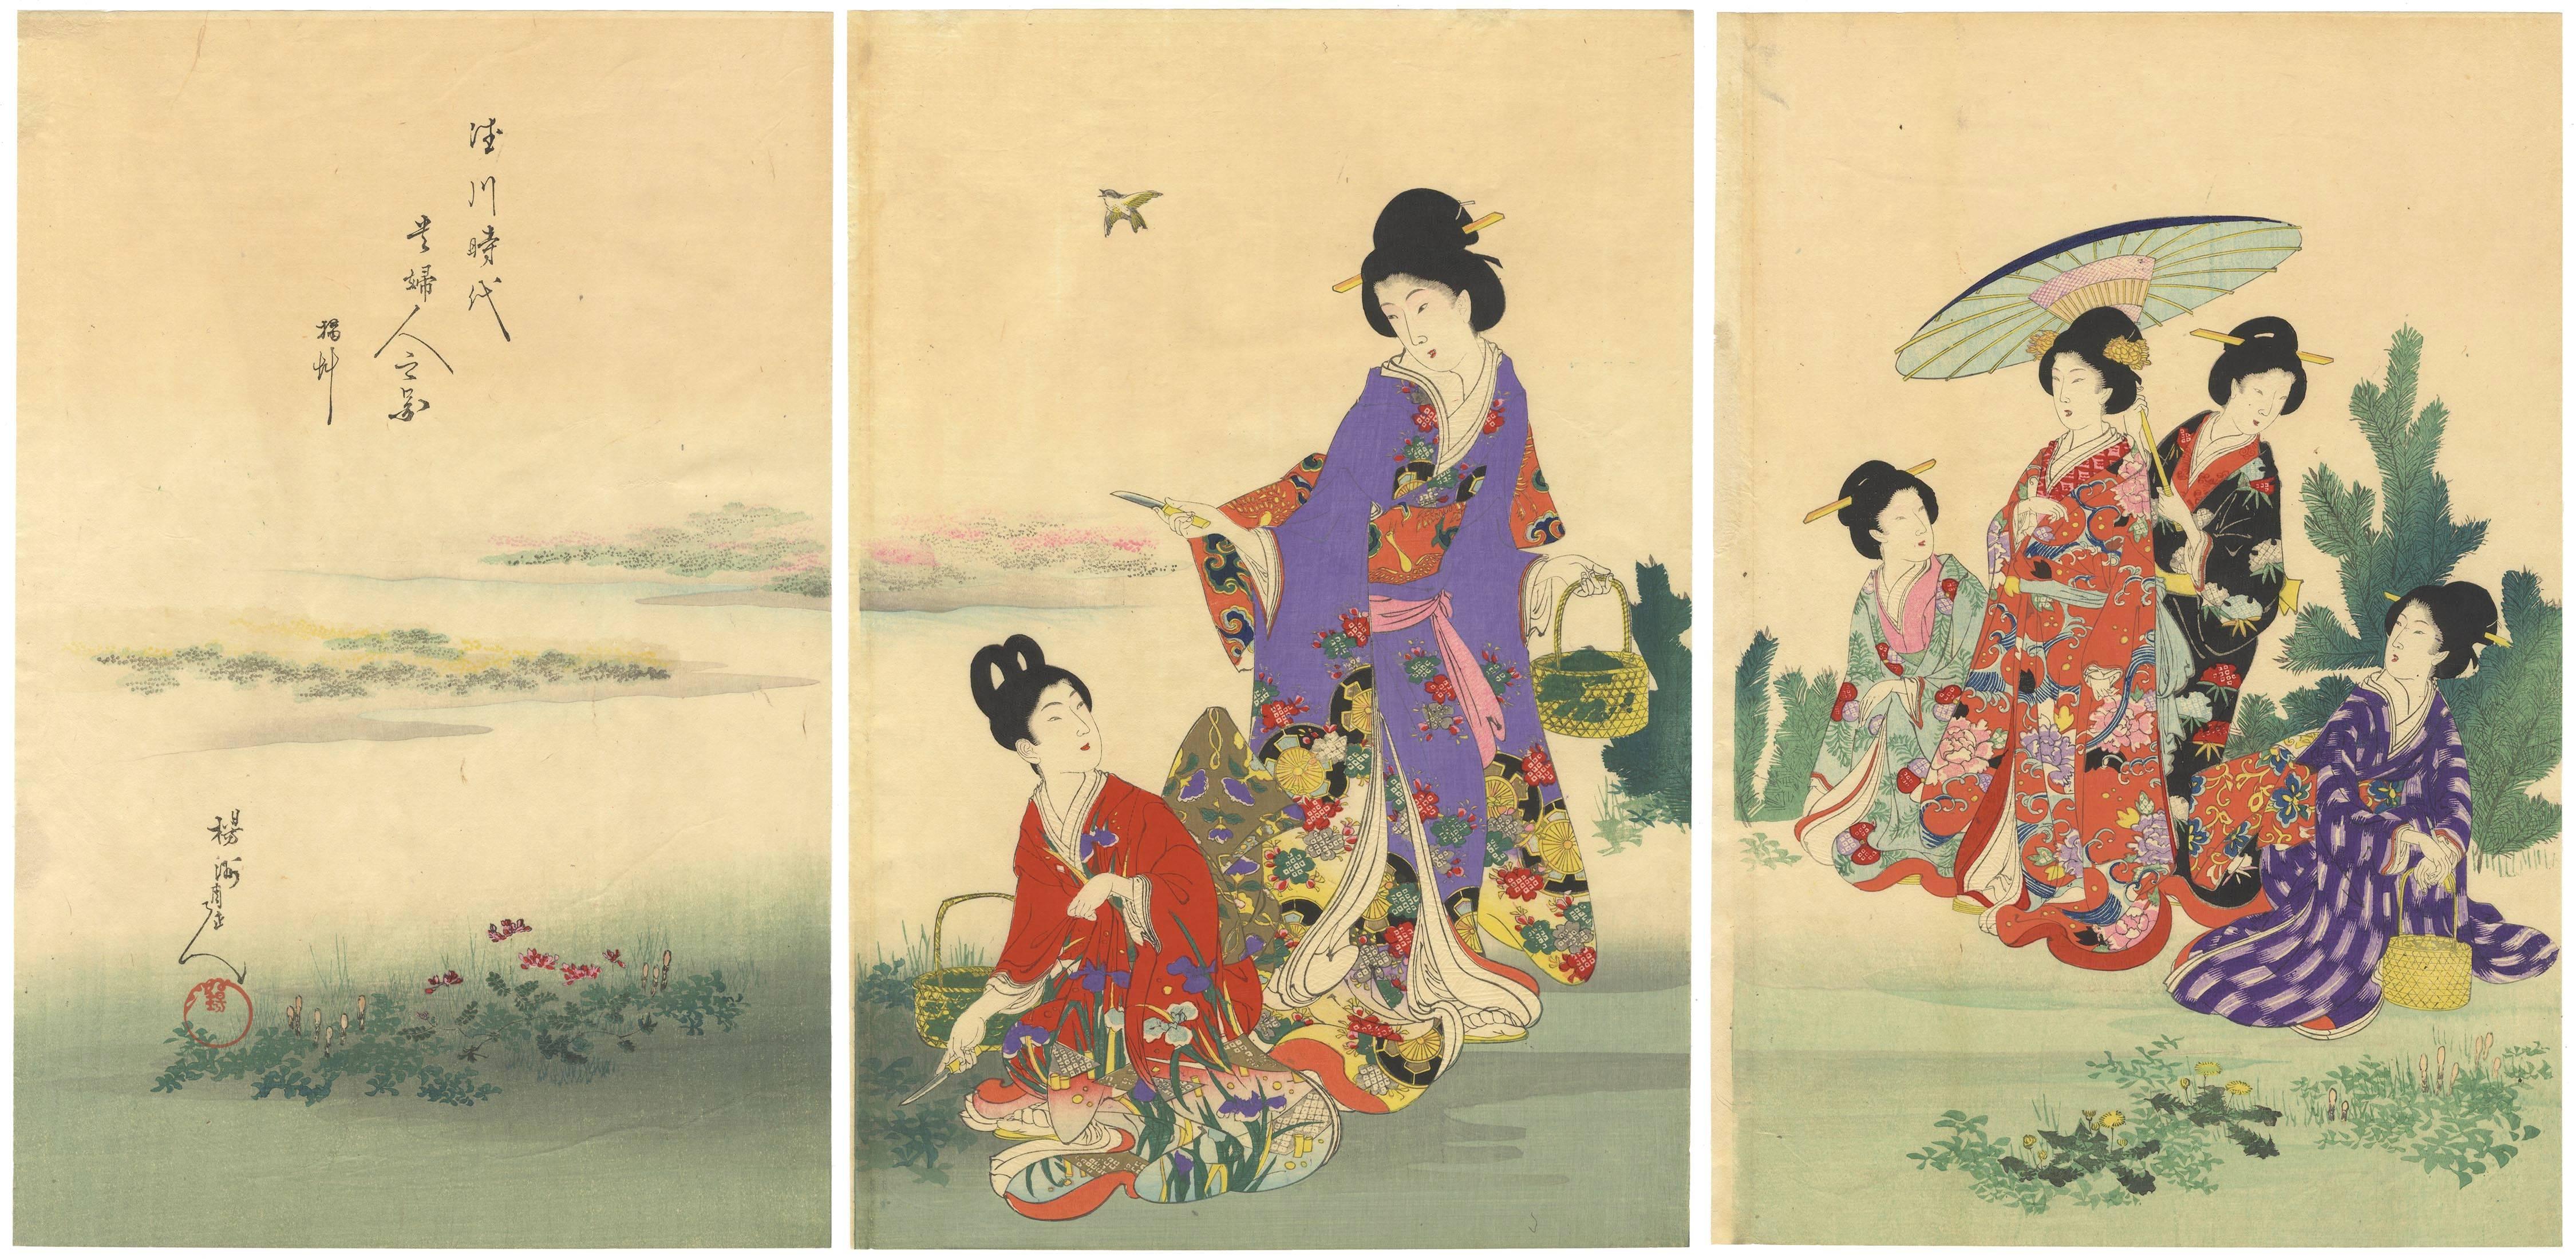 CHIKANOBU, Yoshu Figurative Print - Chikanobu Yoshu, Court Ladies, Kimono, Nature, Japanese Woodblock Print, Beauty